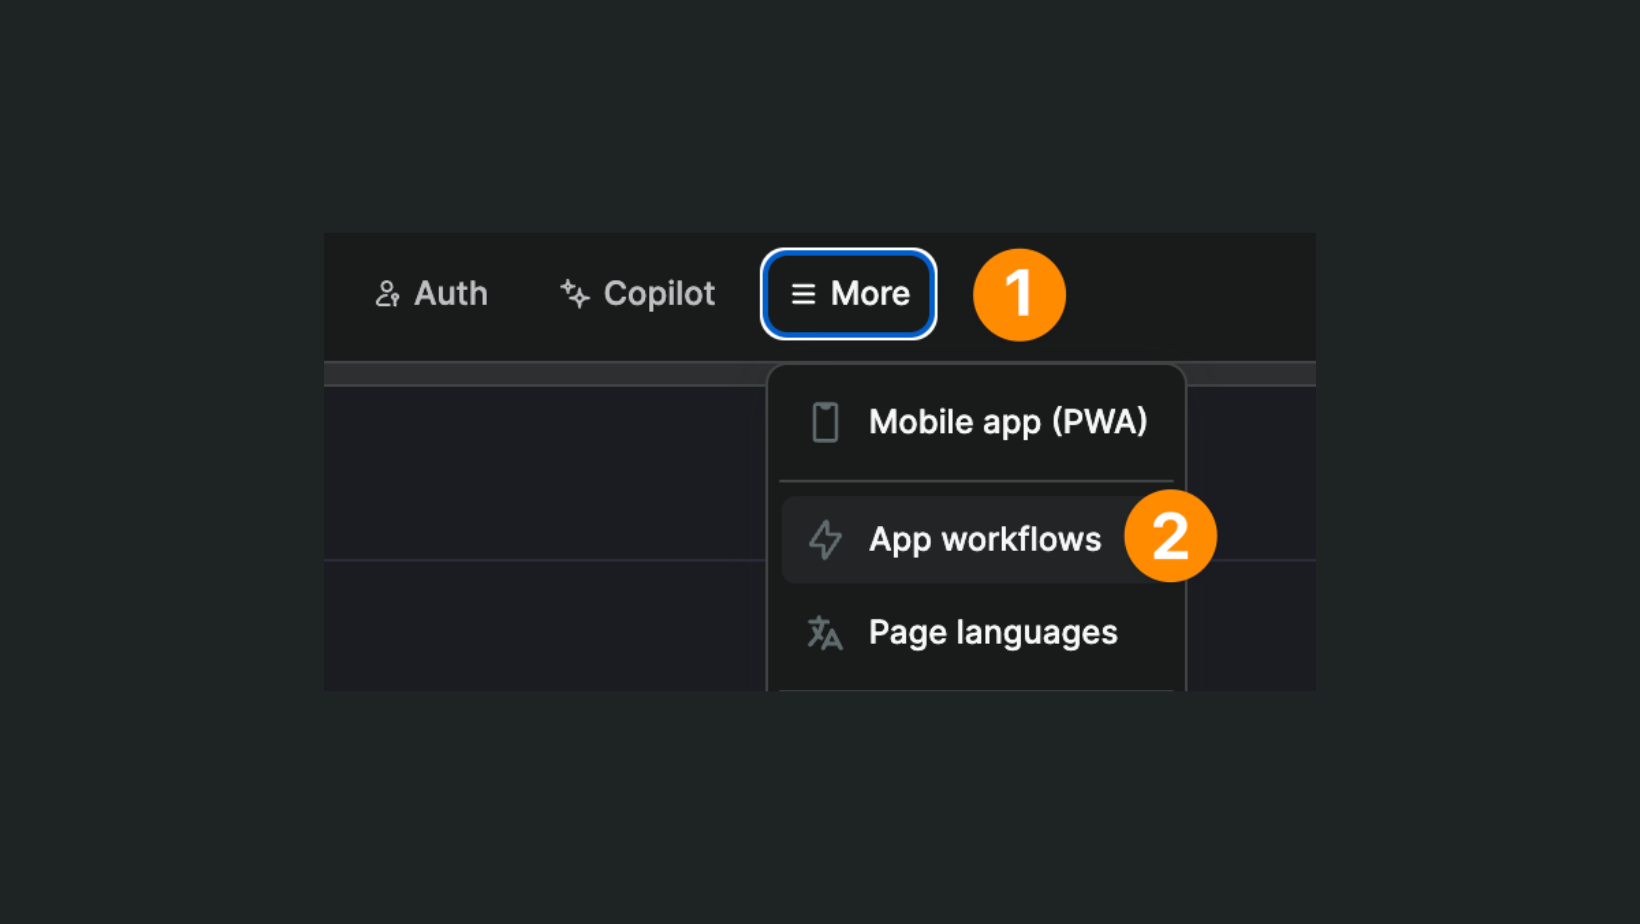 App workflows in More menu